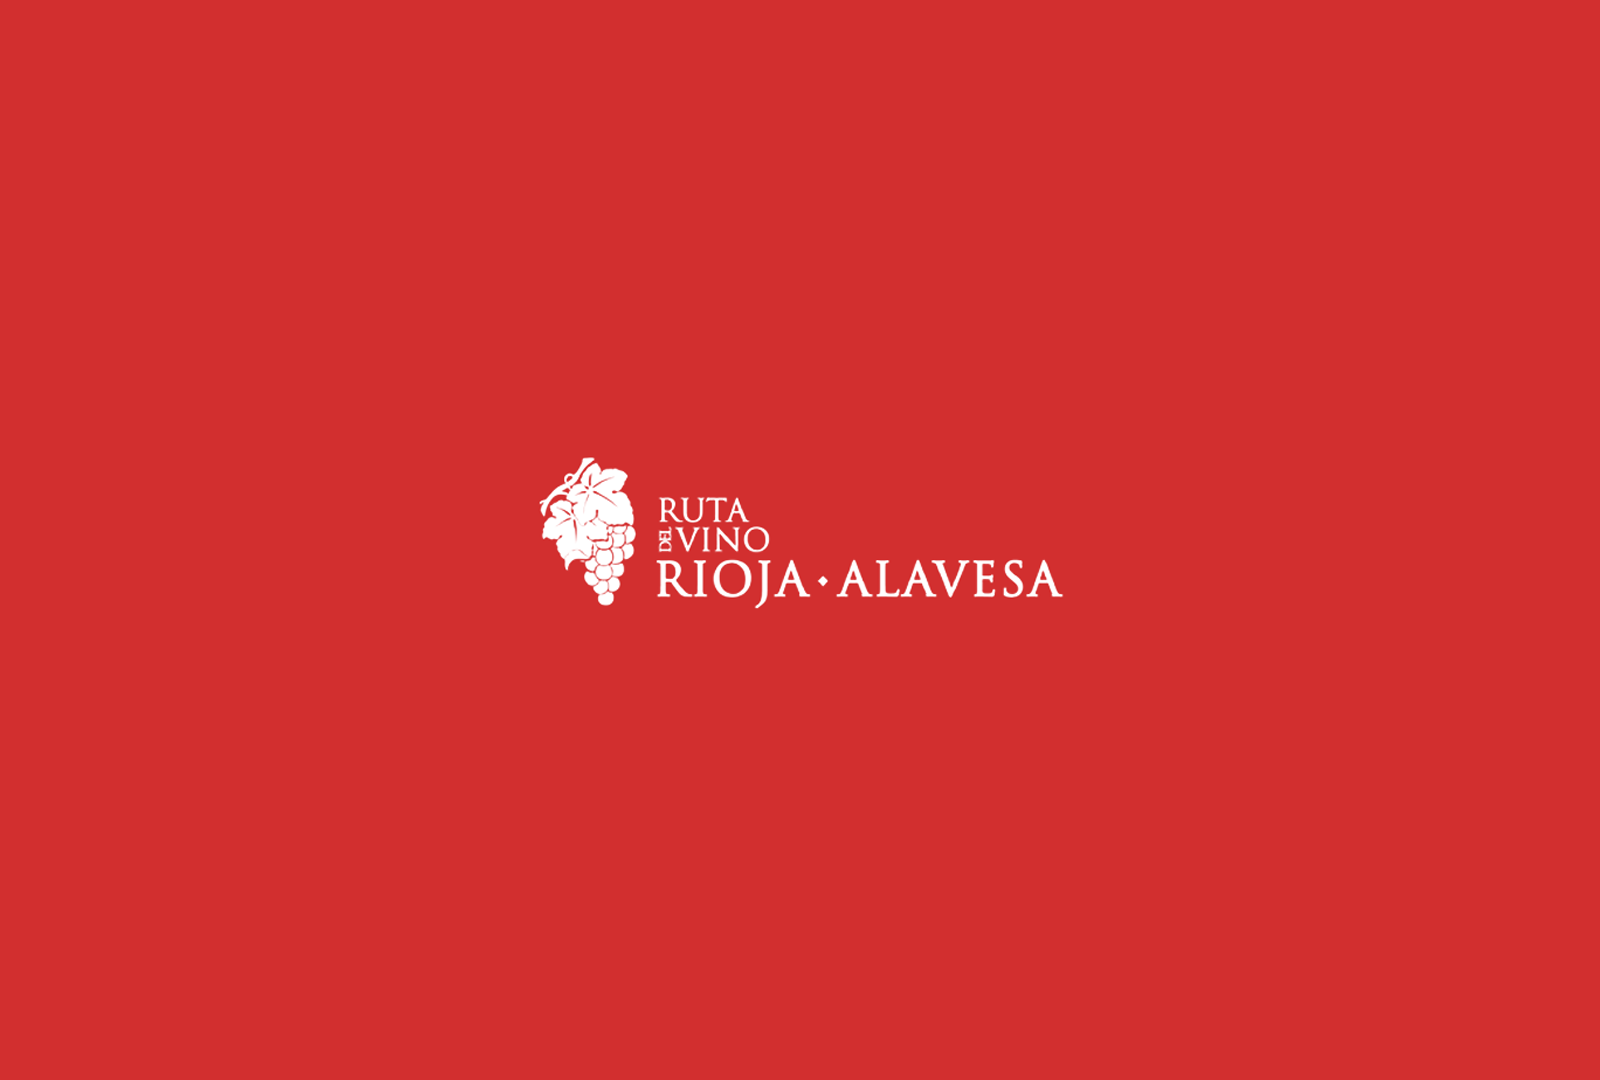 La Ruta del Vino de Rioja Alavesa ha renovado su certificación. - VINOS DIFERENTES